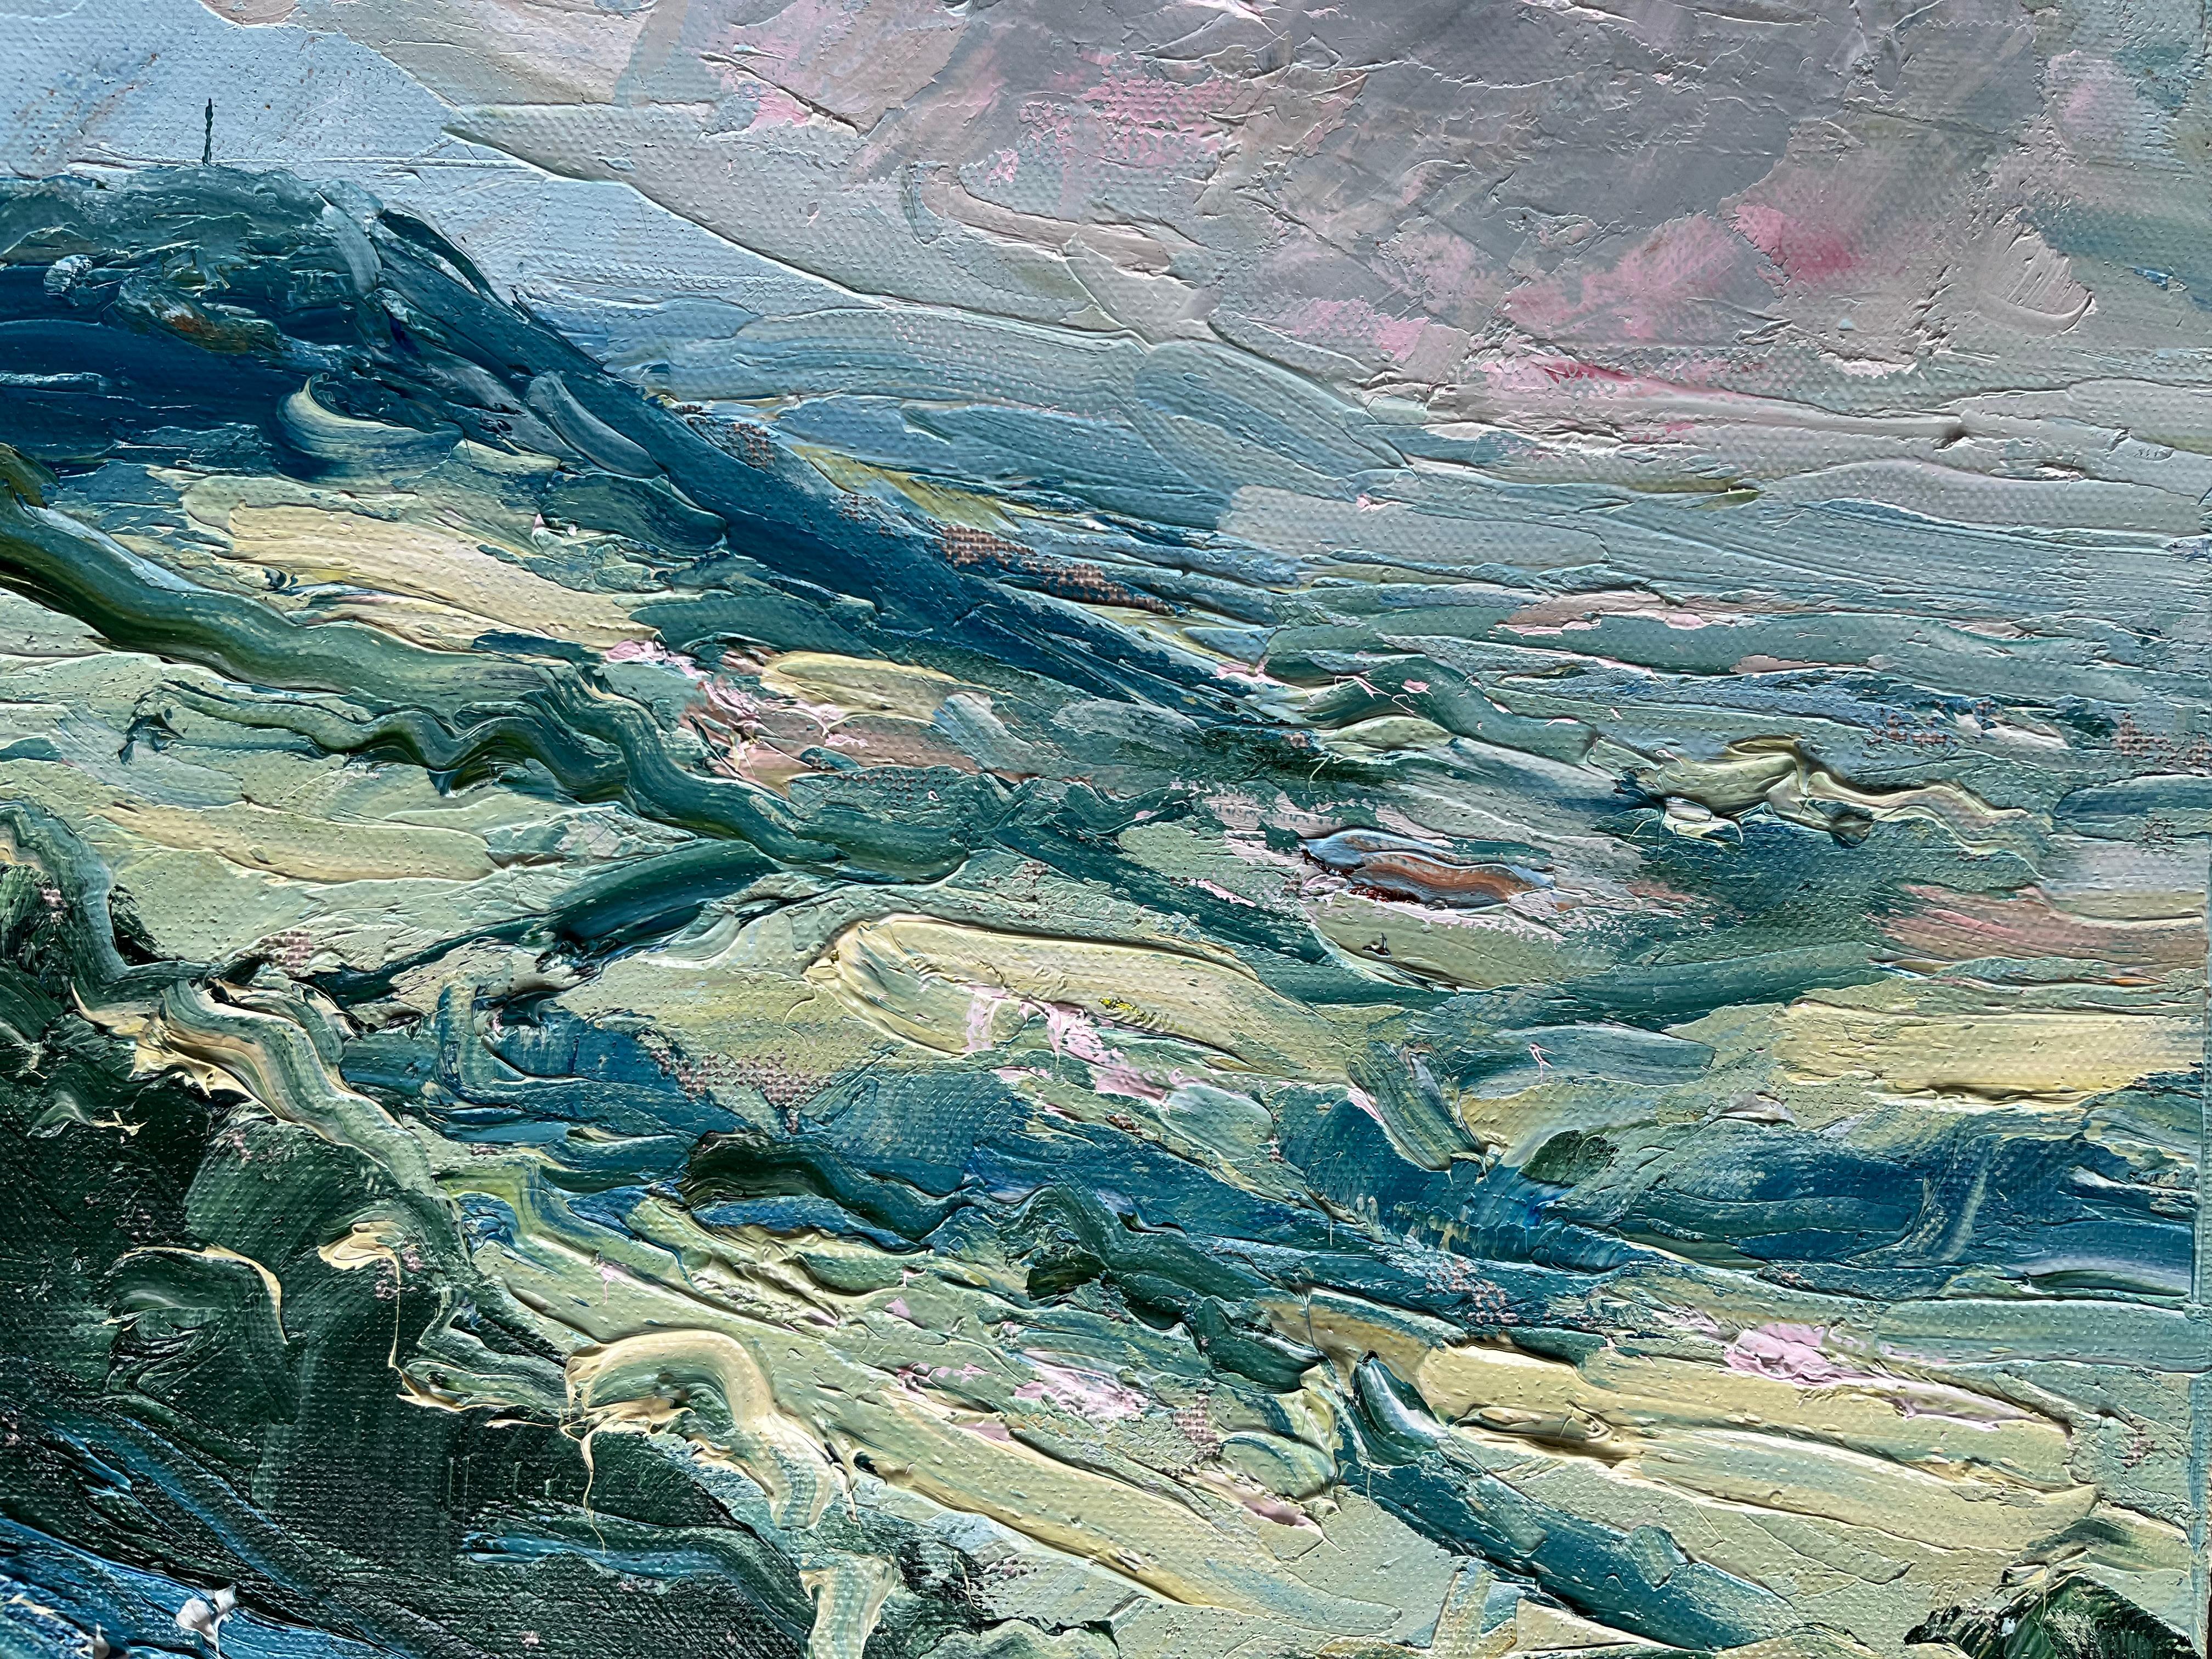 Die Aussicht von Stinchcombe Hill, Gloucestershire, im Abendlicht.

Original-Impasto-Gemälde mit sanften Hügeln und rosafarbenen, blauen und grünen Farbtupfern.

ZUSÄTZLICHE INFORMATIONEN: 
Stinchcombe Hill, Abendveranstaltung von Rupert Aker